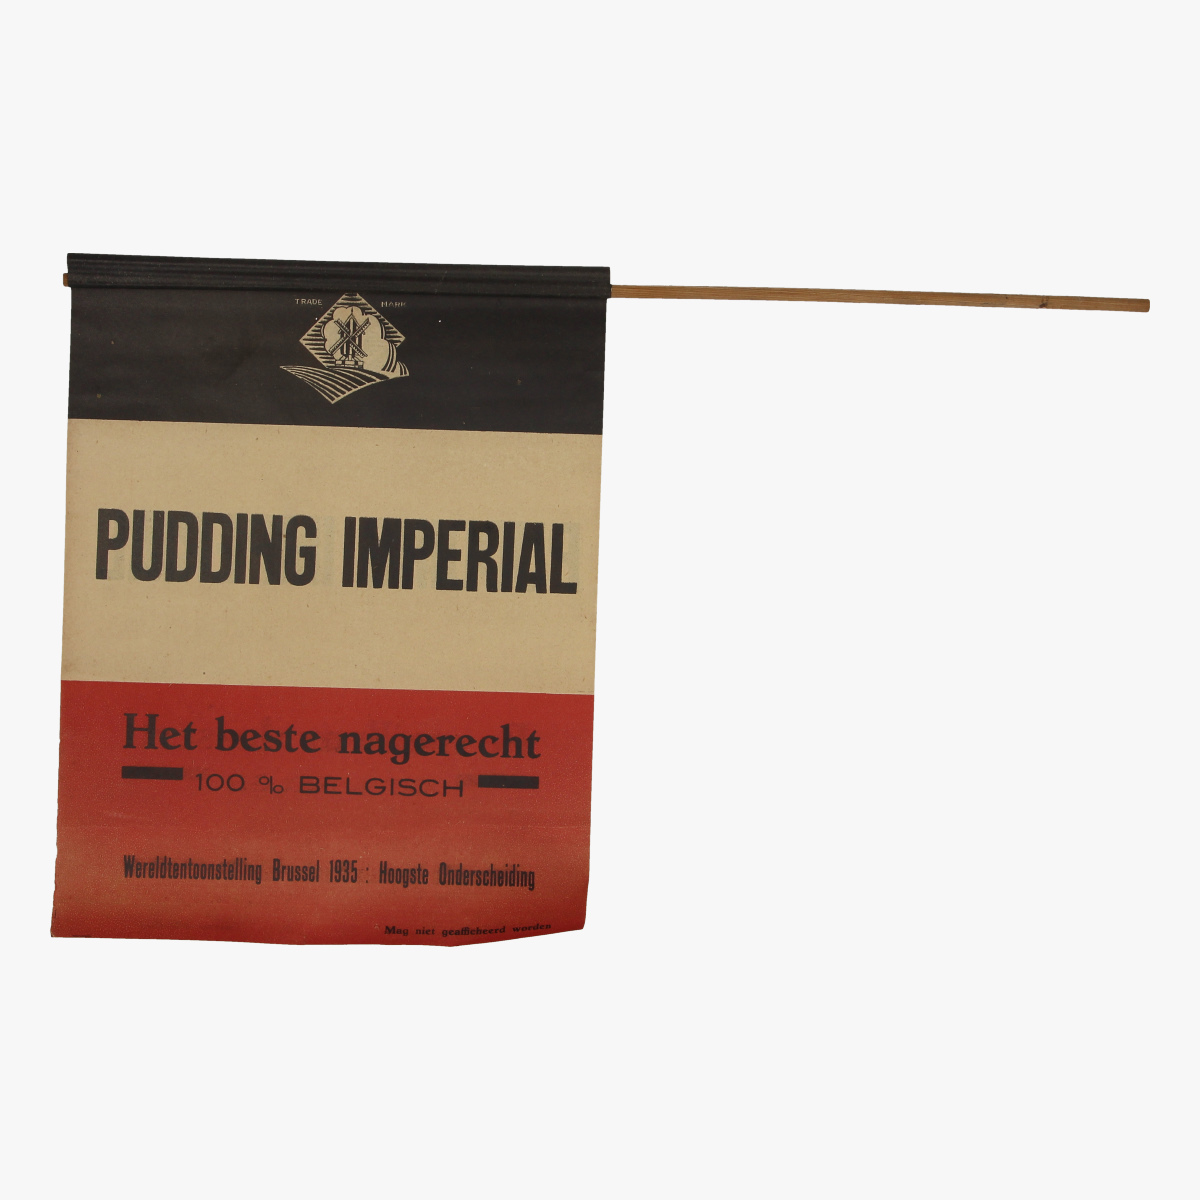 Afbeeldingen van wereld tentoonstelling 1935 bxl pudding imperial vlagje